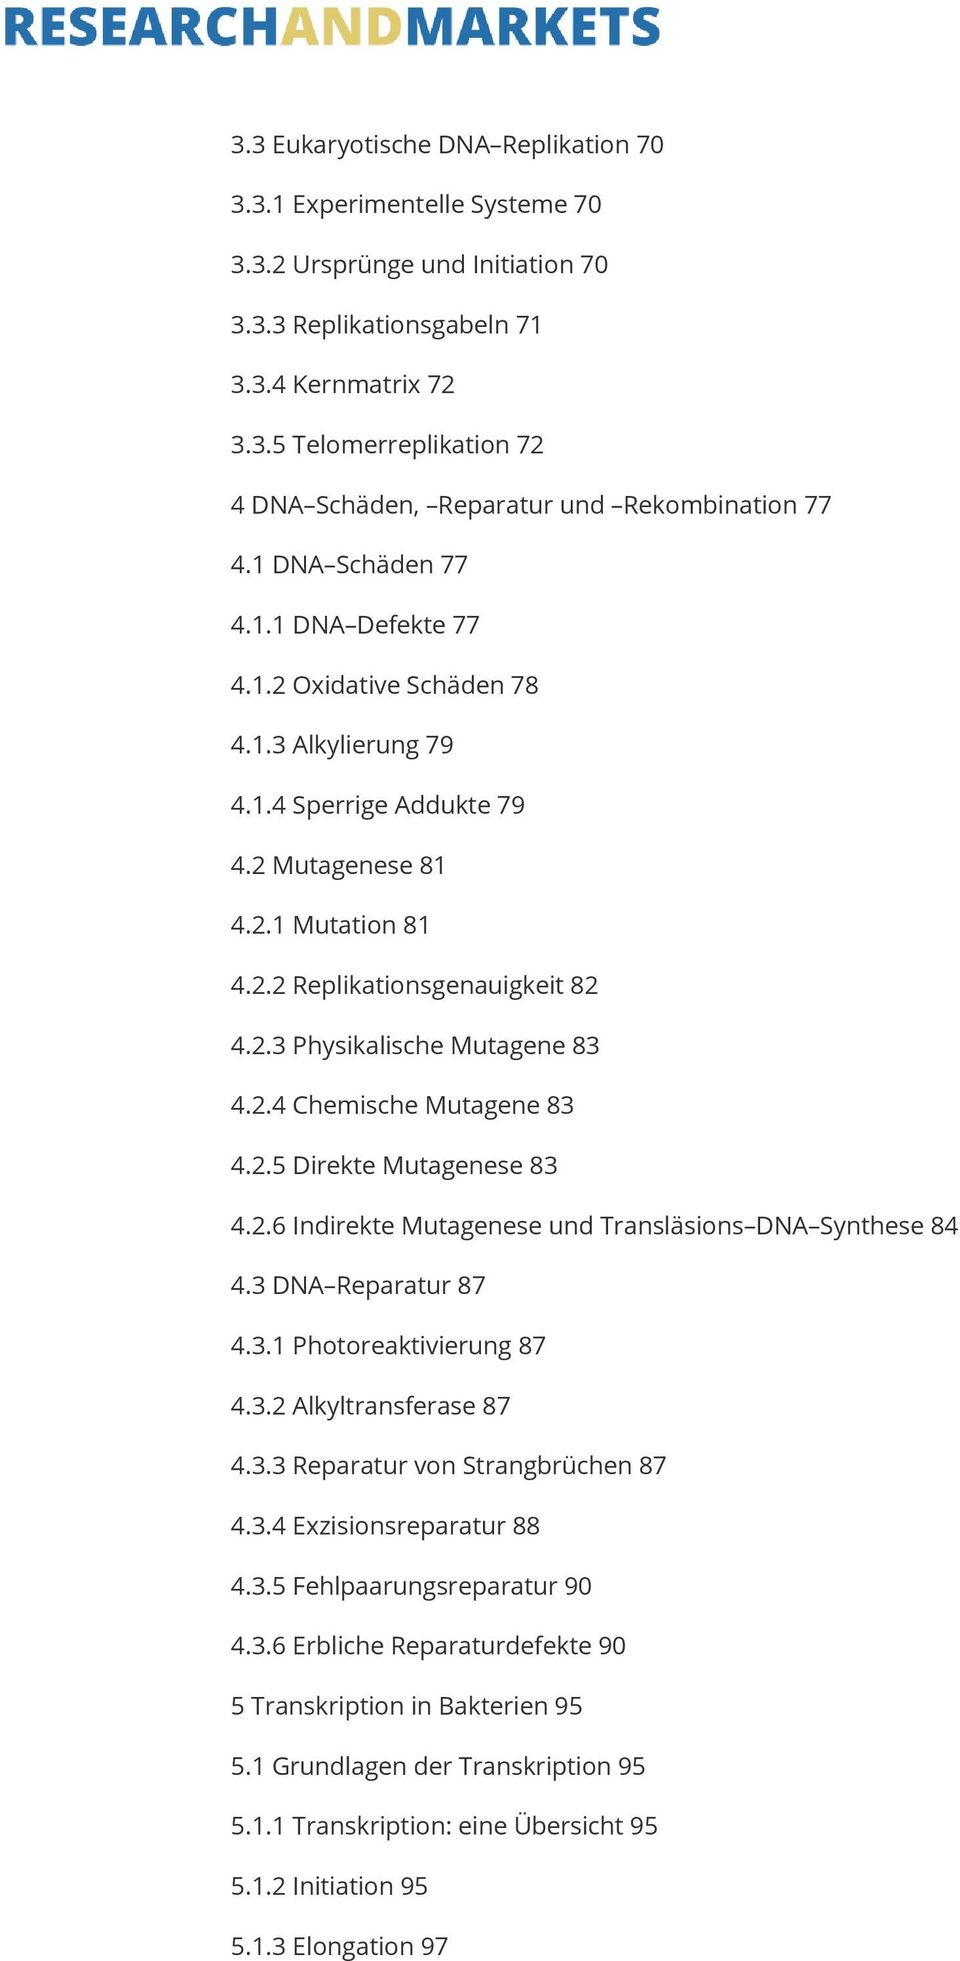 2.4 Chemische Mutagene 83 4.2.5 Direkte Mutagenese 83 4.2.6 Indirekte Mutagenese und Transläsions DNA Synthese 84 4.3 DNA Reparatur 87 4.3.1 Photoreaktivierung 87 4.3.2 Alkyltransferase 87 4.3.3 Reparatur von Strangbrüchen 87 4.